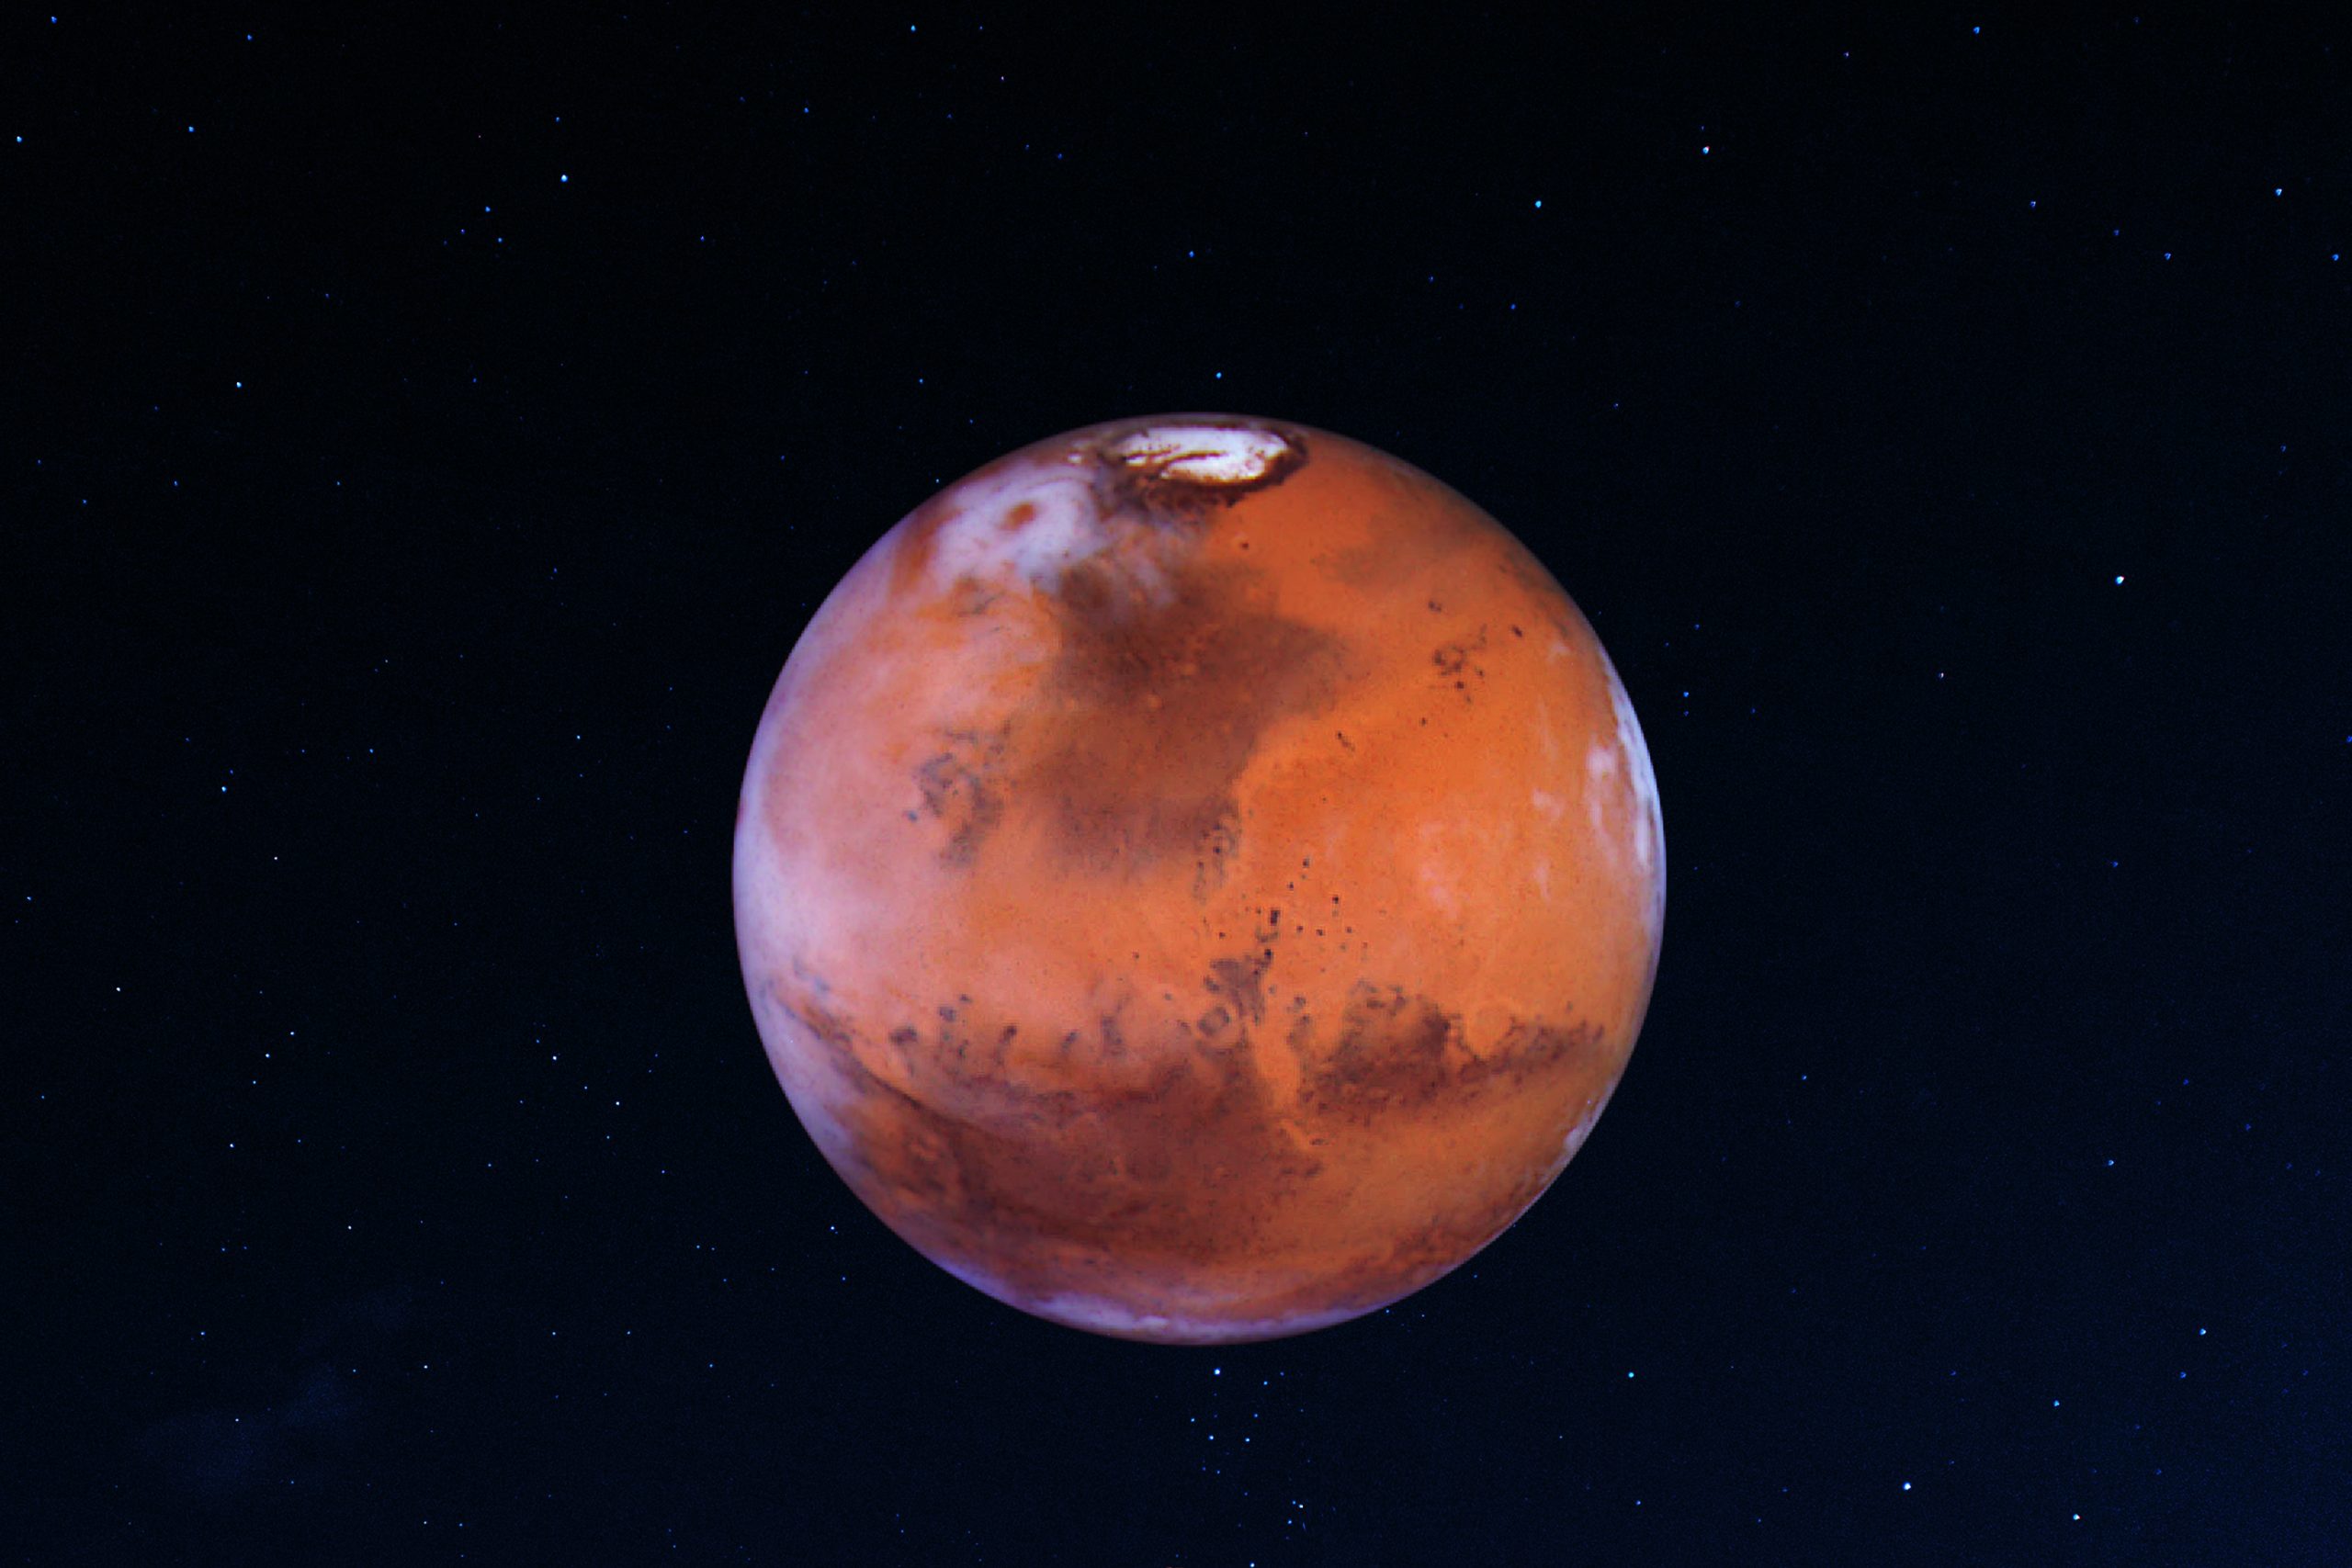 Камни, измененные водой, найденные Perseverance, могут скрывать следы жизни на Марсе